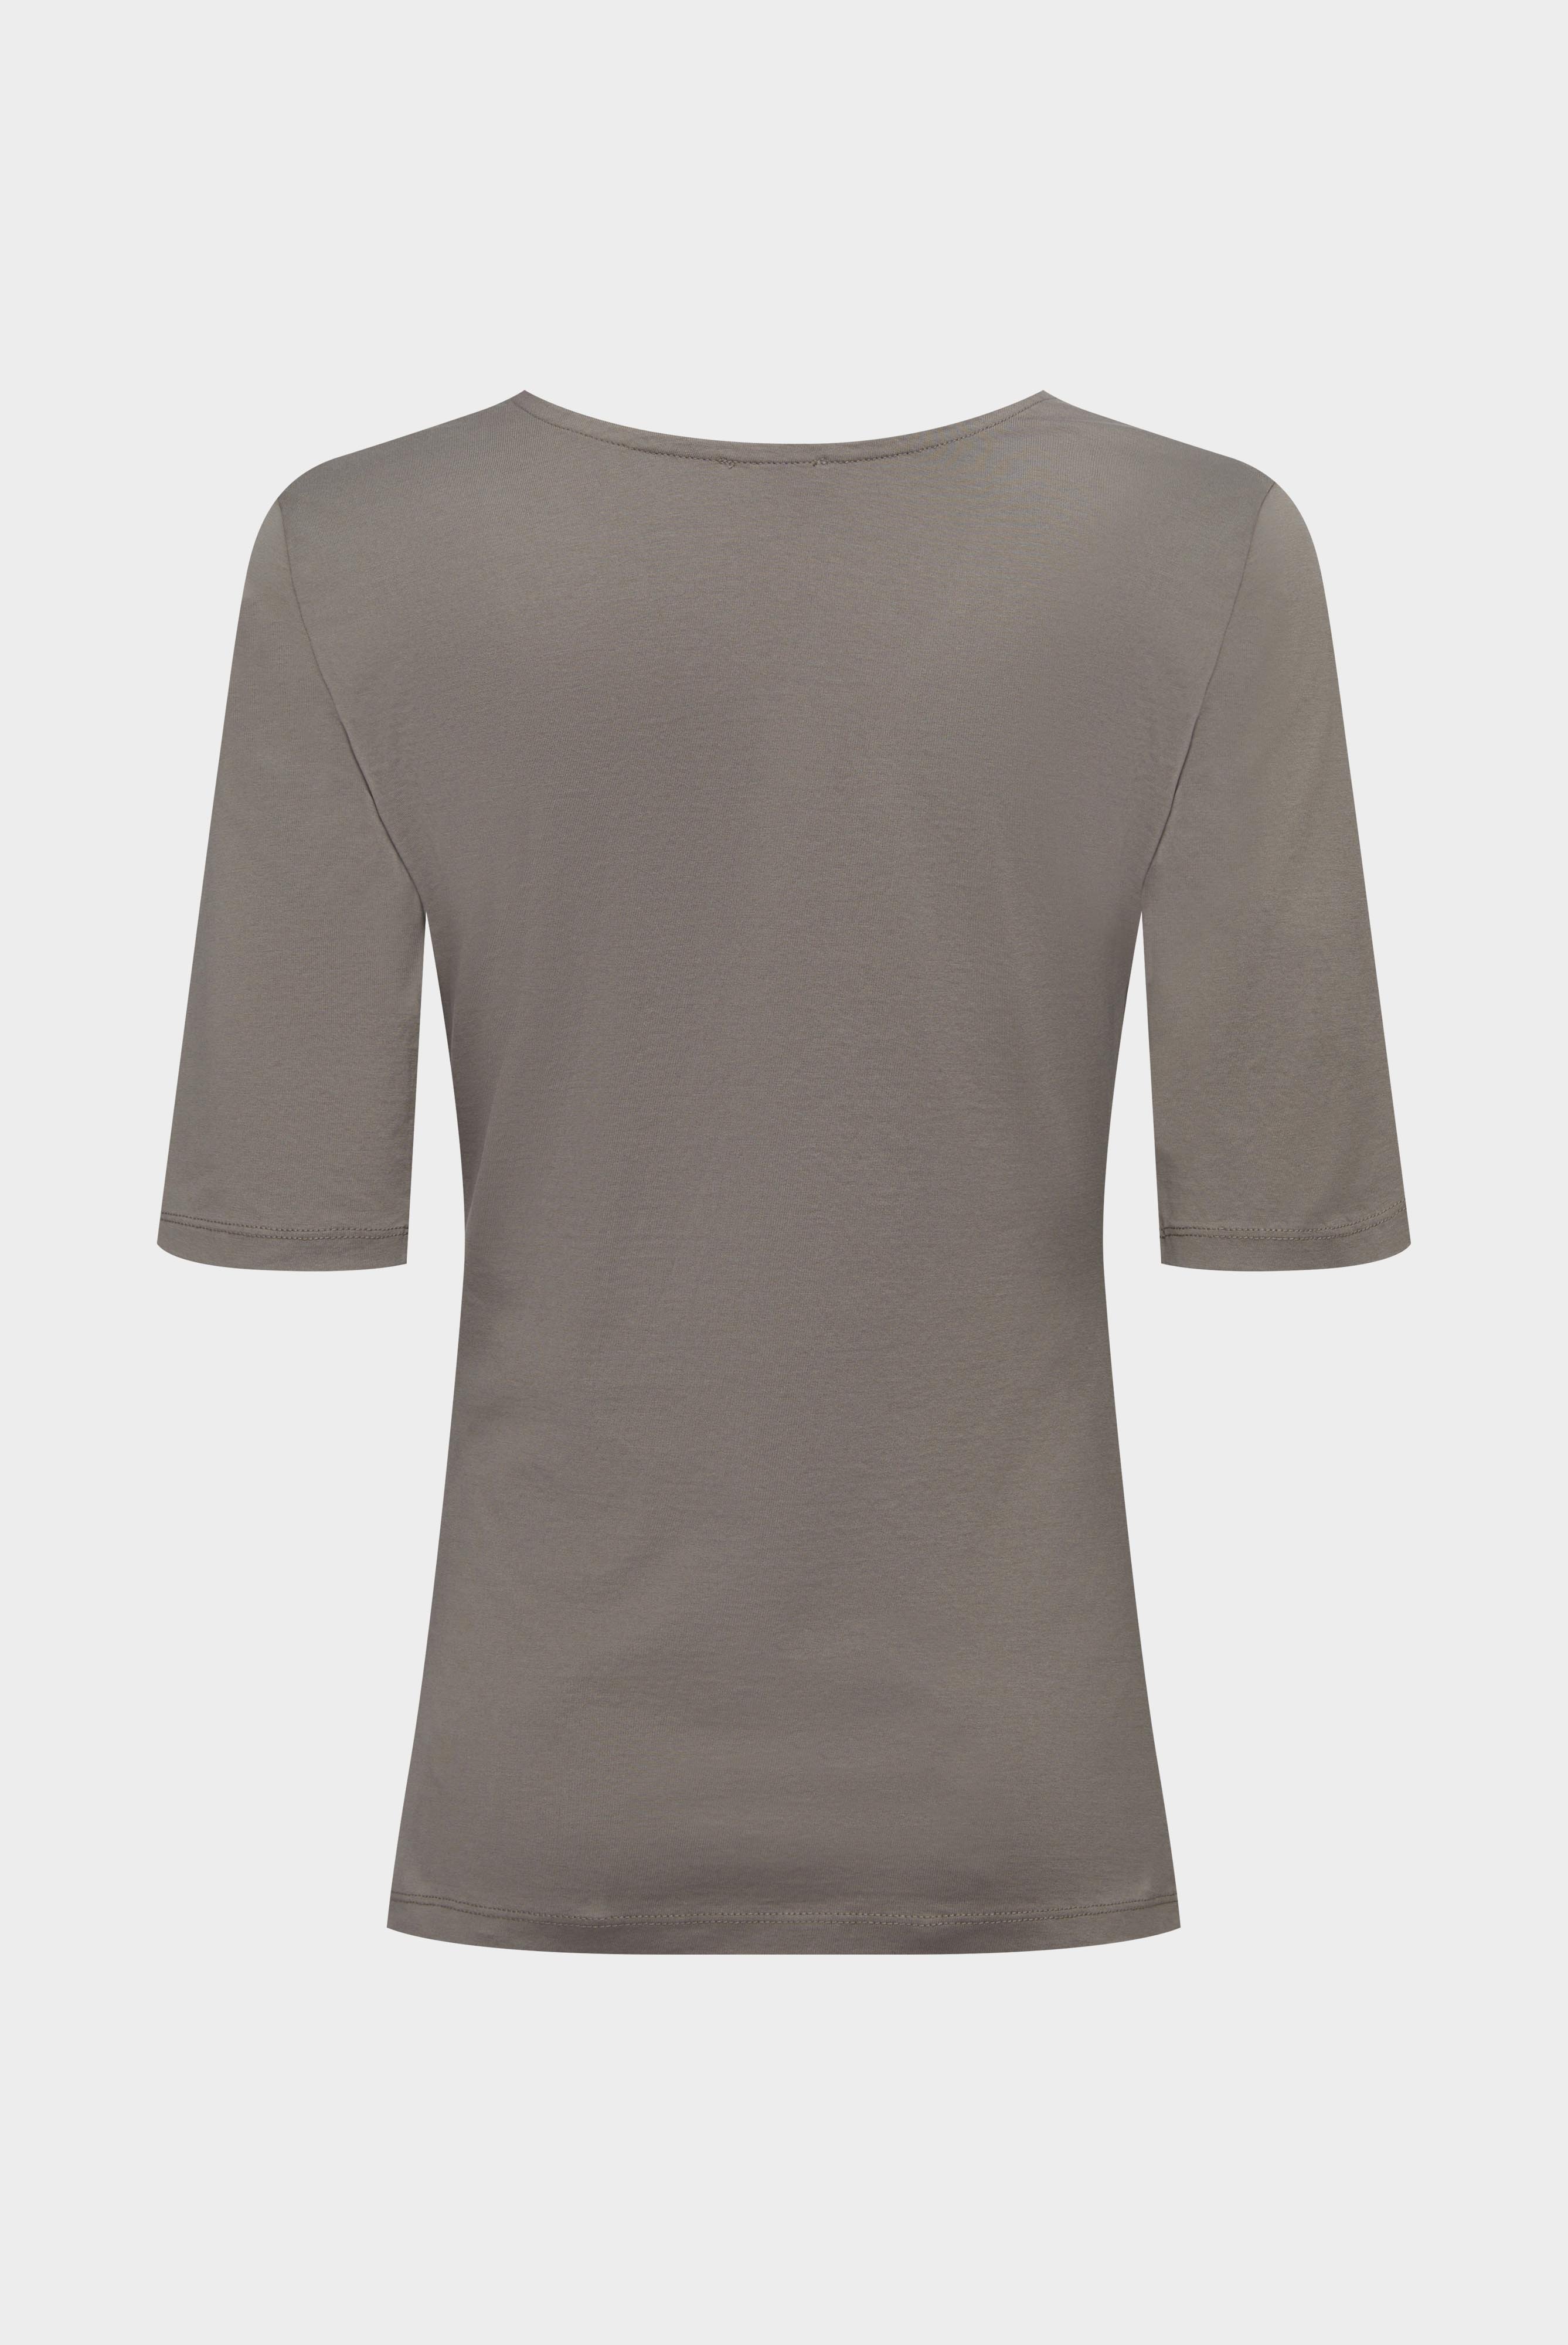 Tops & T-Shirts+Urban Jersey Wide Neck T-Shirt+05.2911..Z20044.060.XL